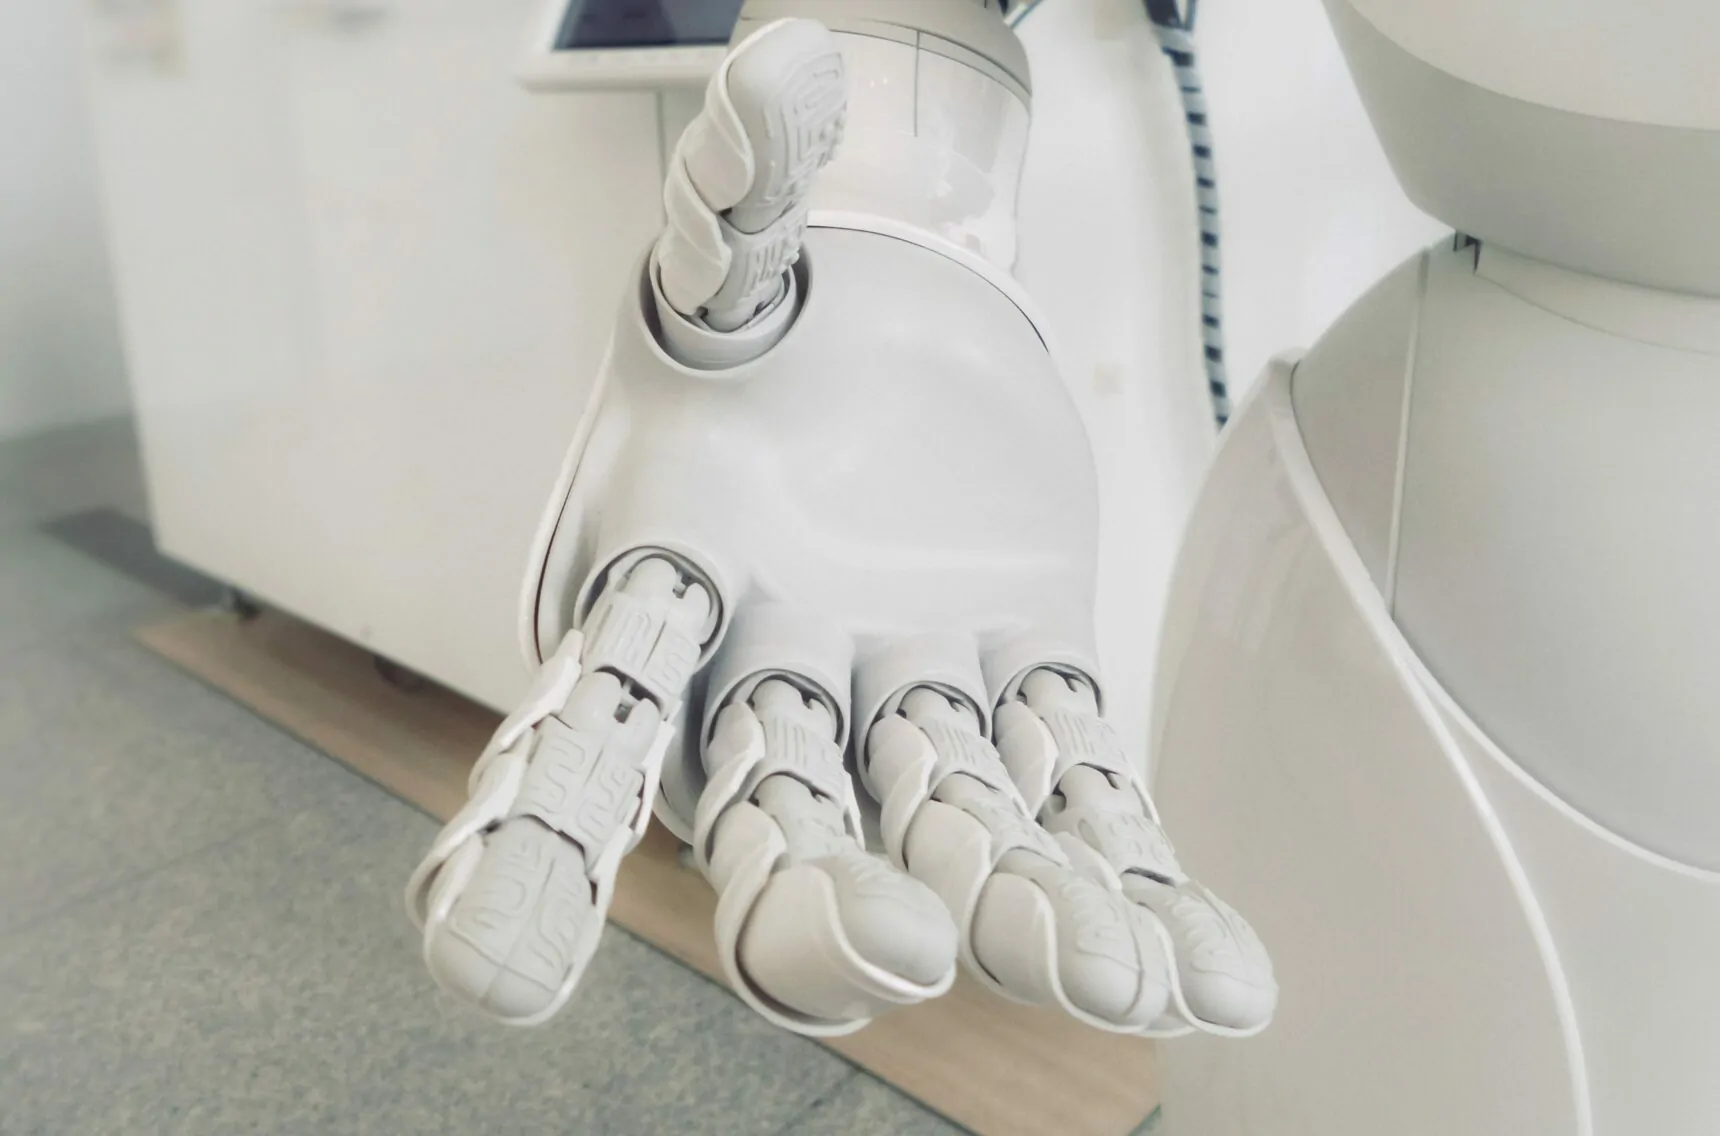 Bild einer Roboterhand, Robotics, KI